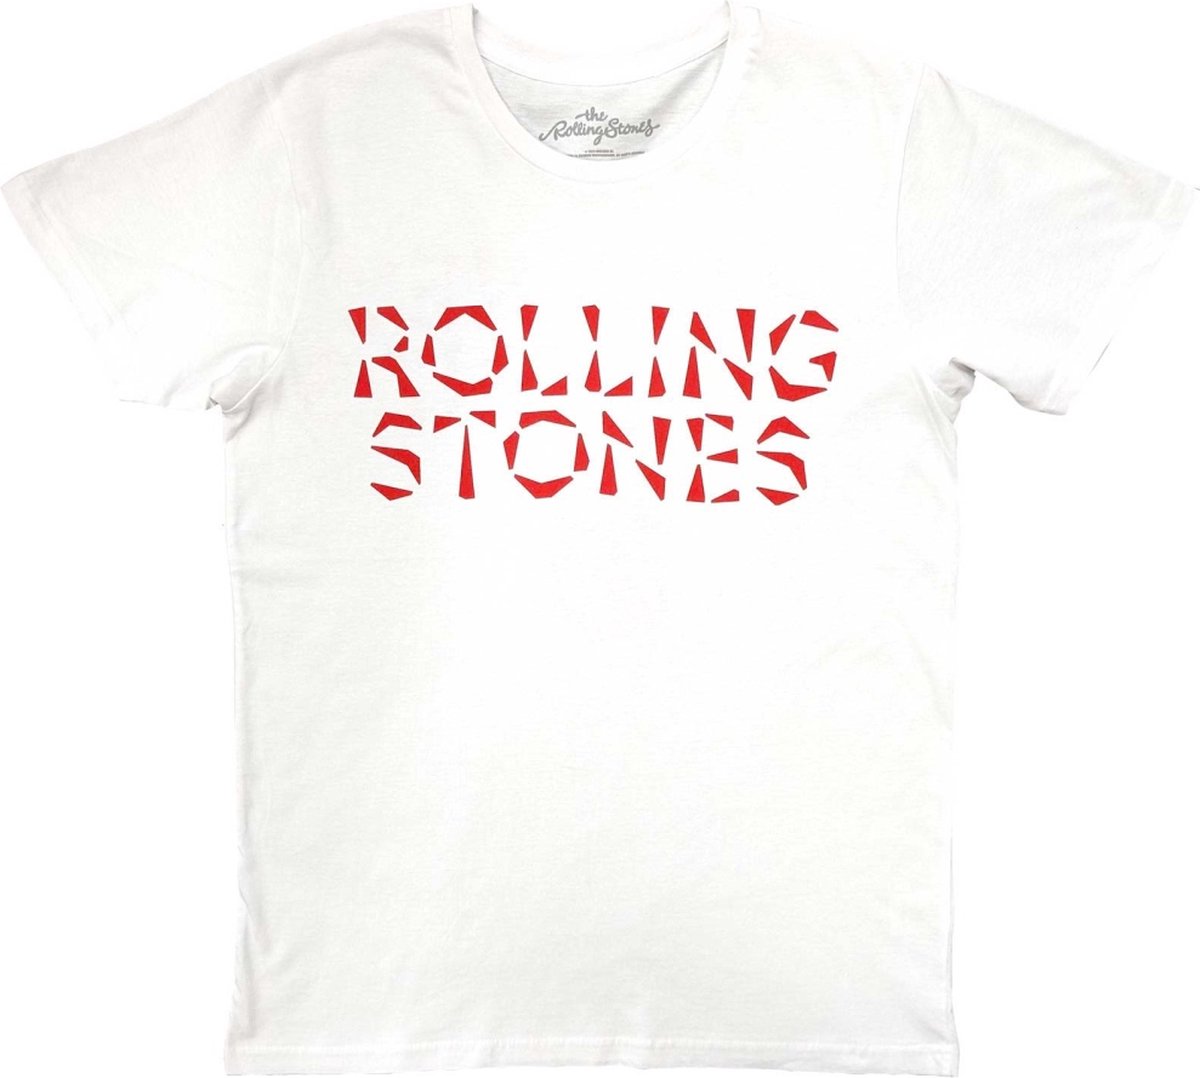 The Rolling Stones - Hackney Diamonds Heren T-shirt - L - Wit